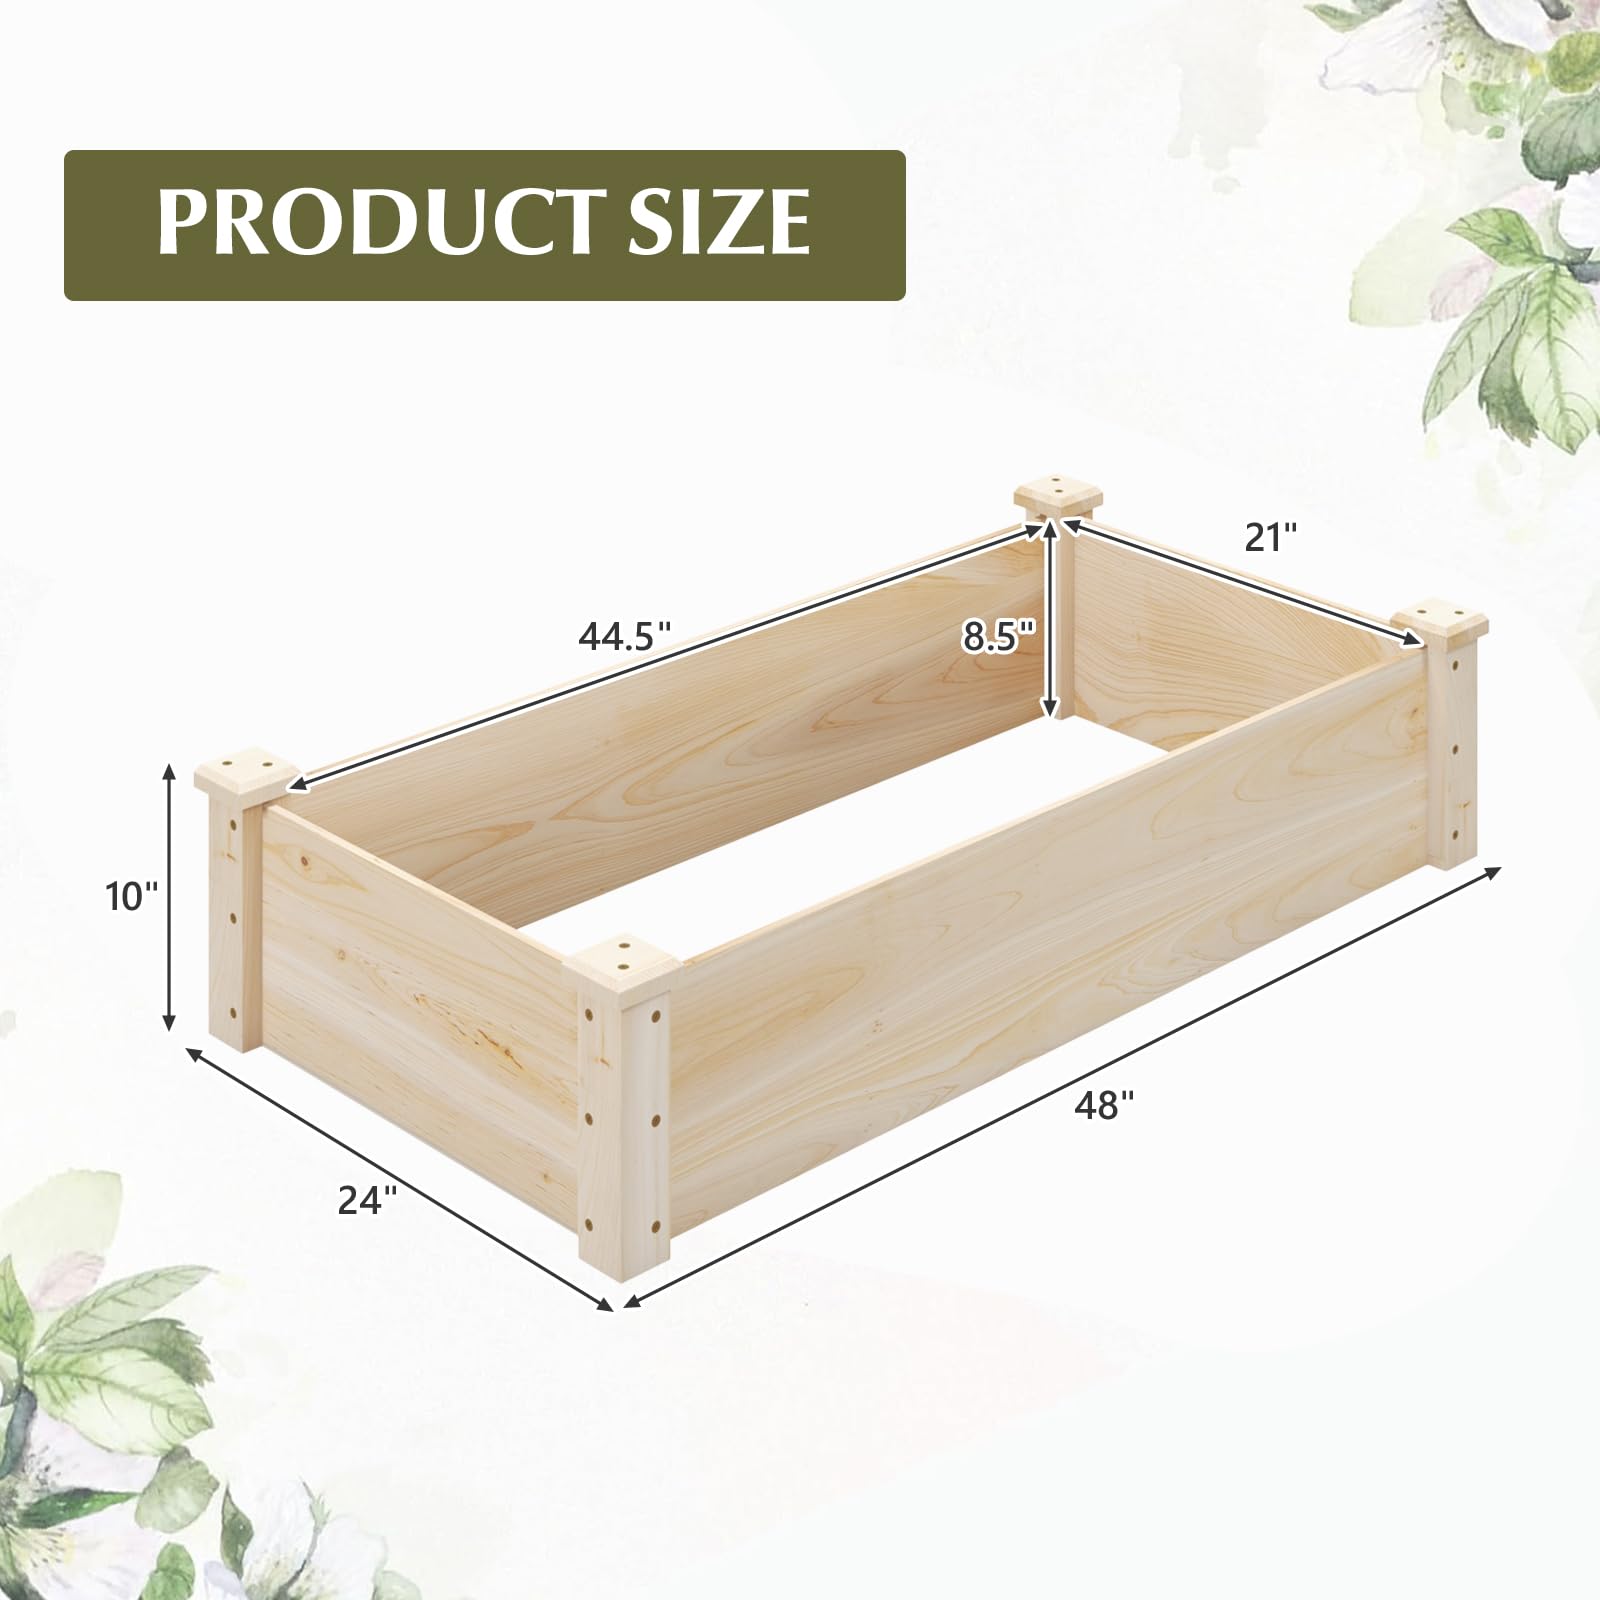 Giantex Wooden Raised Garden Bed